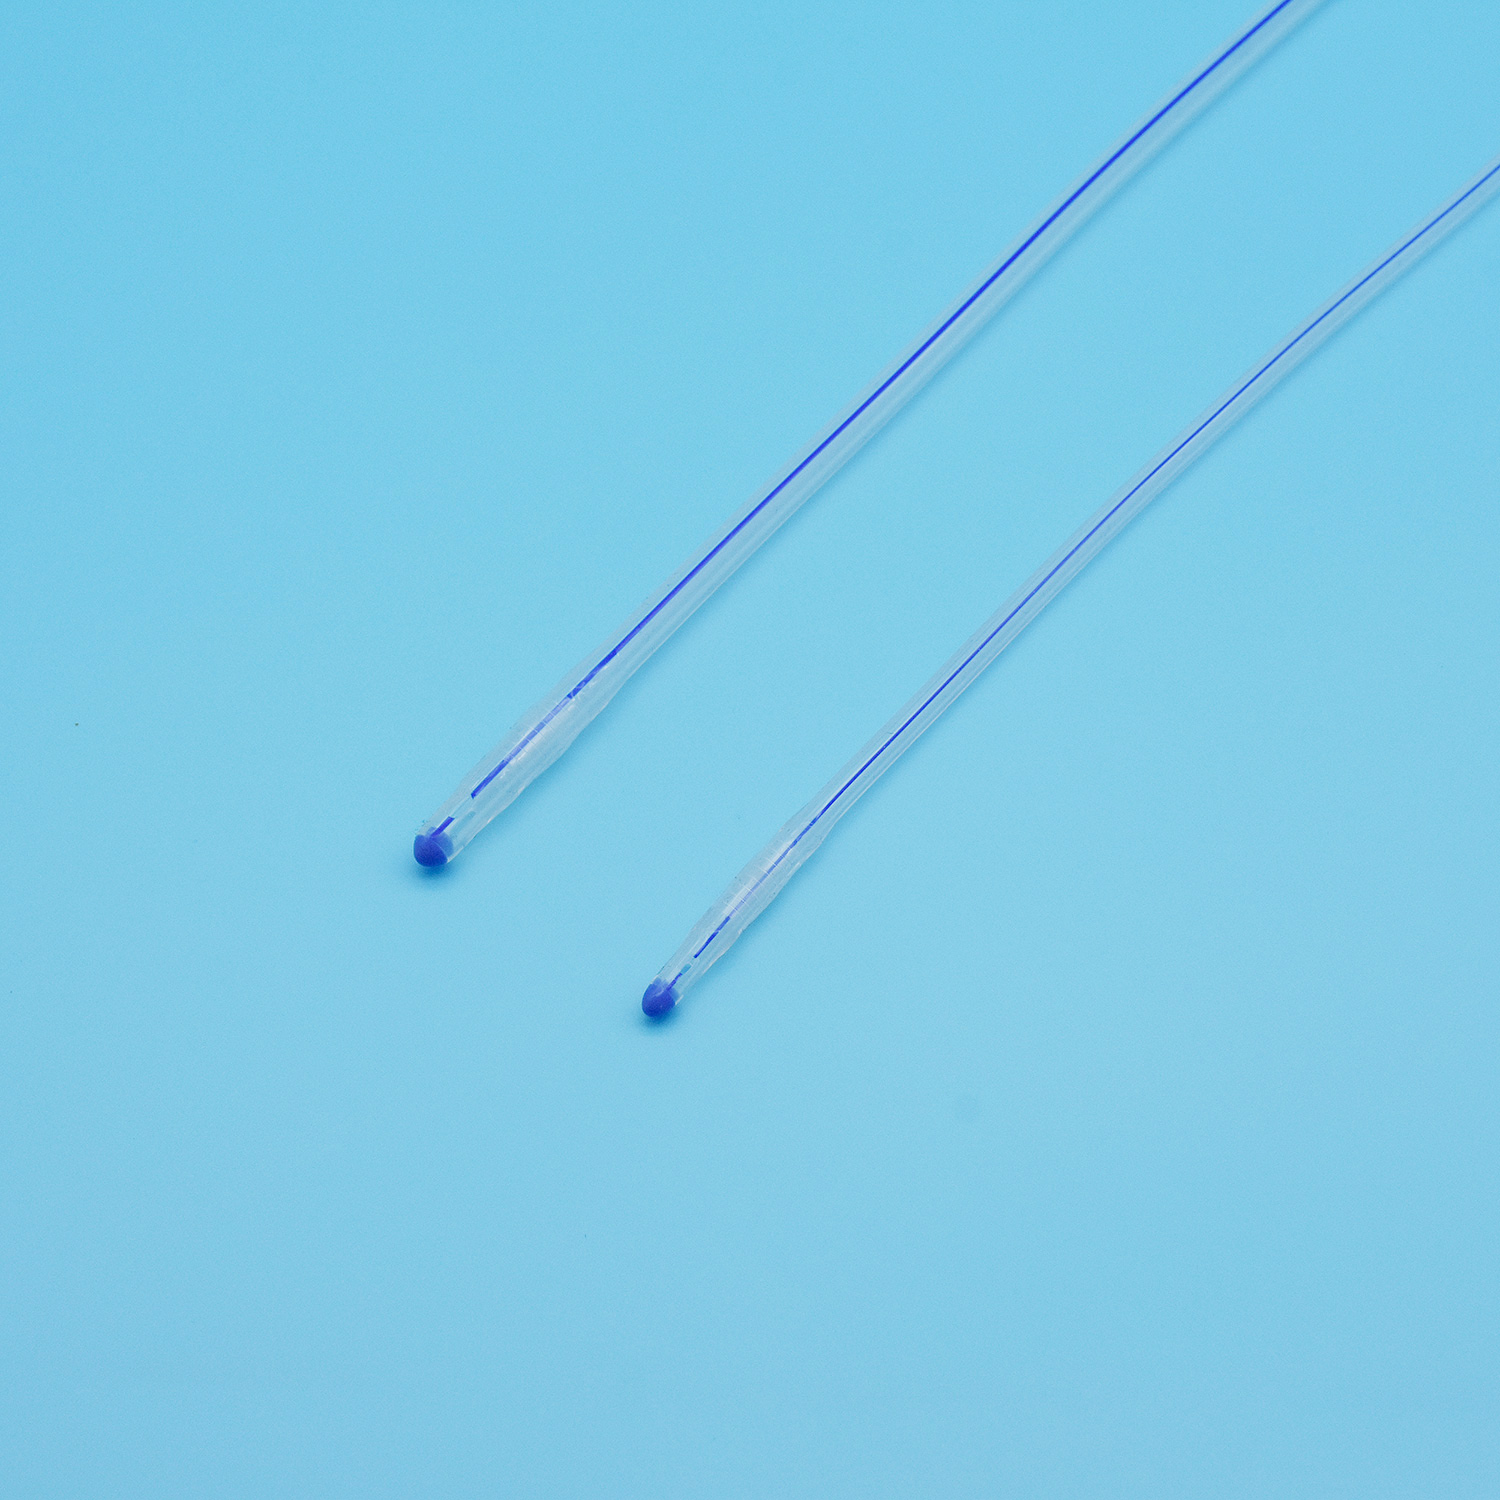 Trosmjerni silikonski Foley kateter Standardni za jednokratnu upotrebu, veleprodaja, Kina, okrugli vrh s normalnim balonom urina Uretralni kateter Drenažni kateter Urinarni